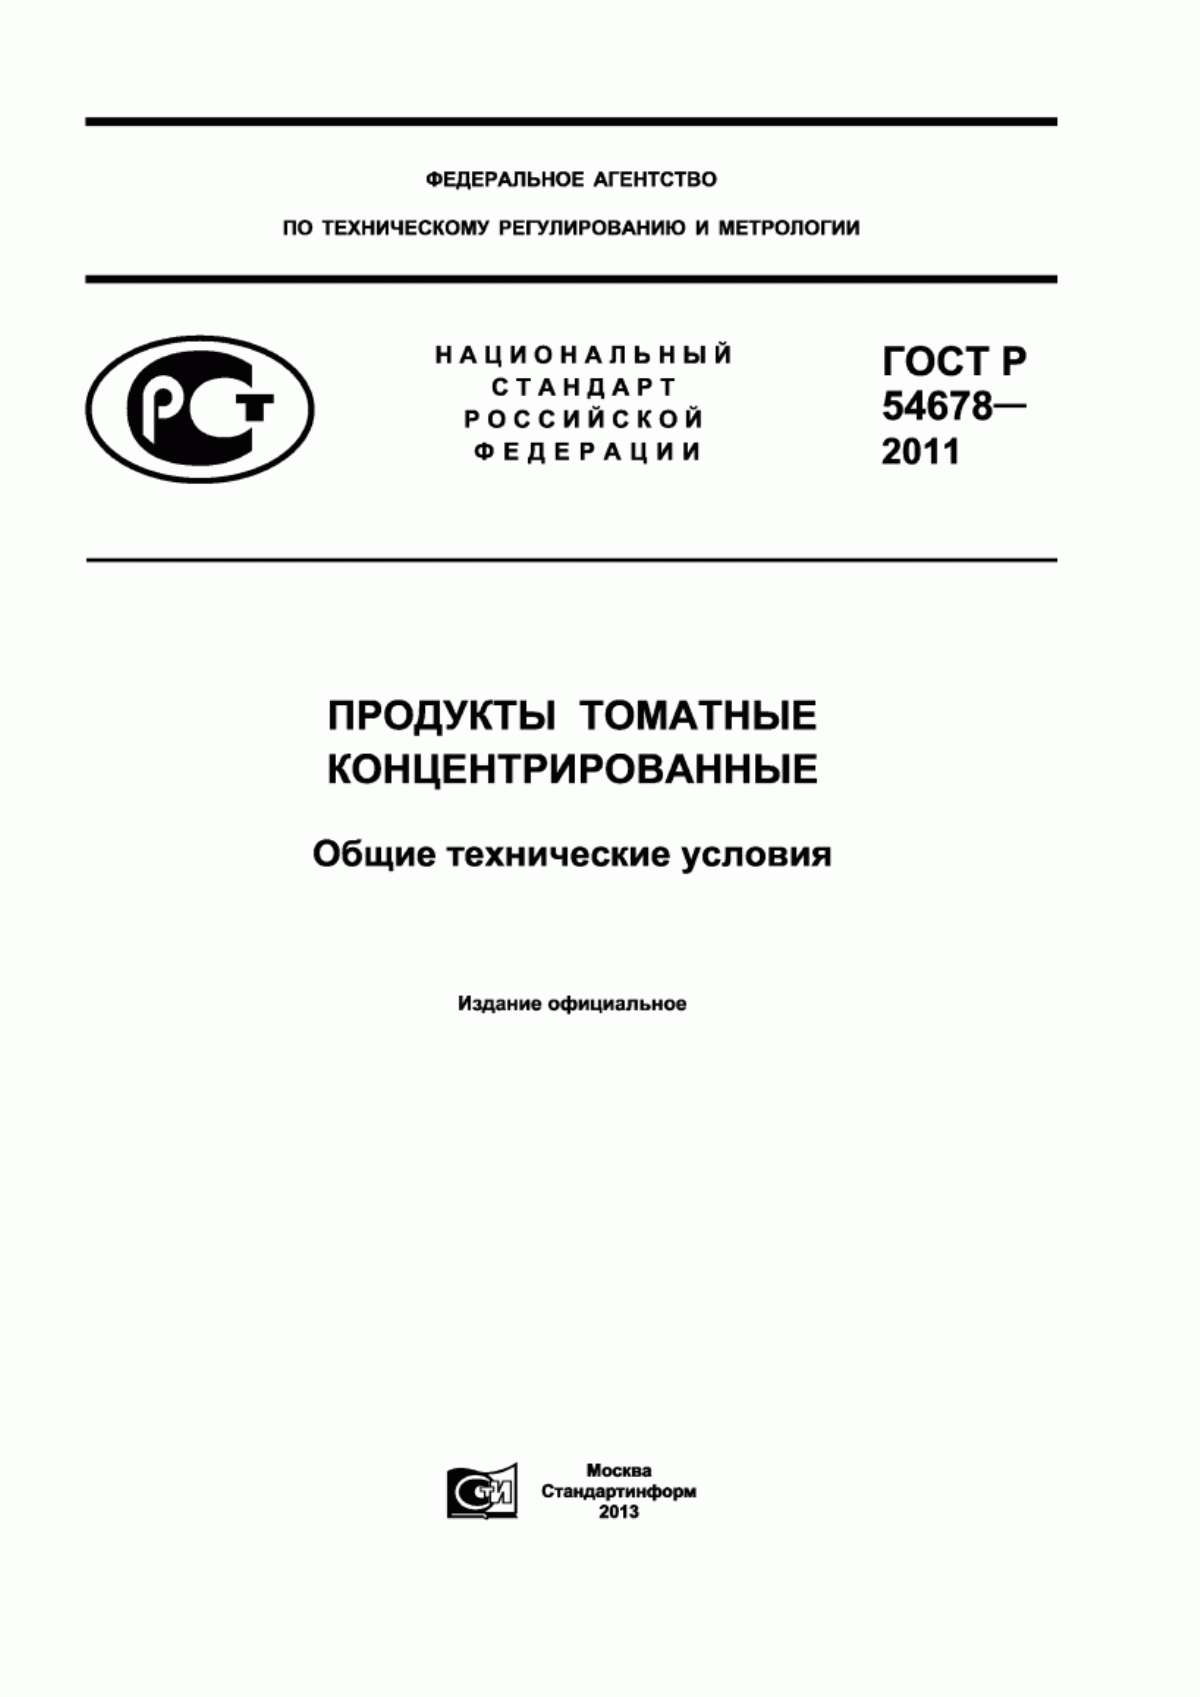 ГОСТ Р 54678-2011 Продукты томатные концентрированные. Общие технические условия